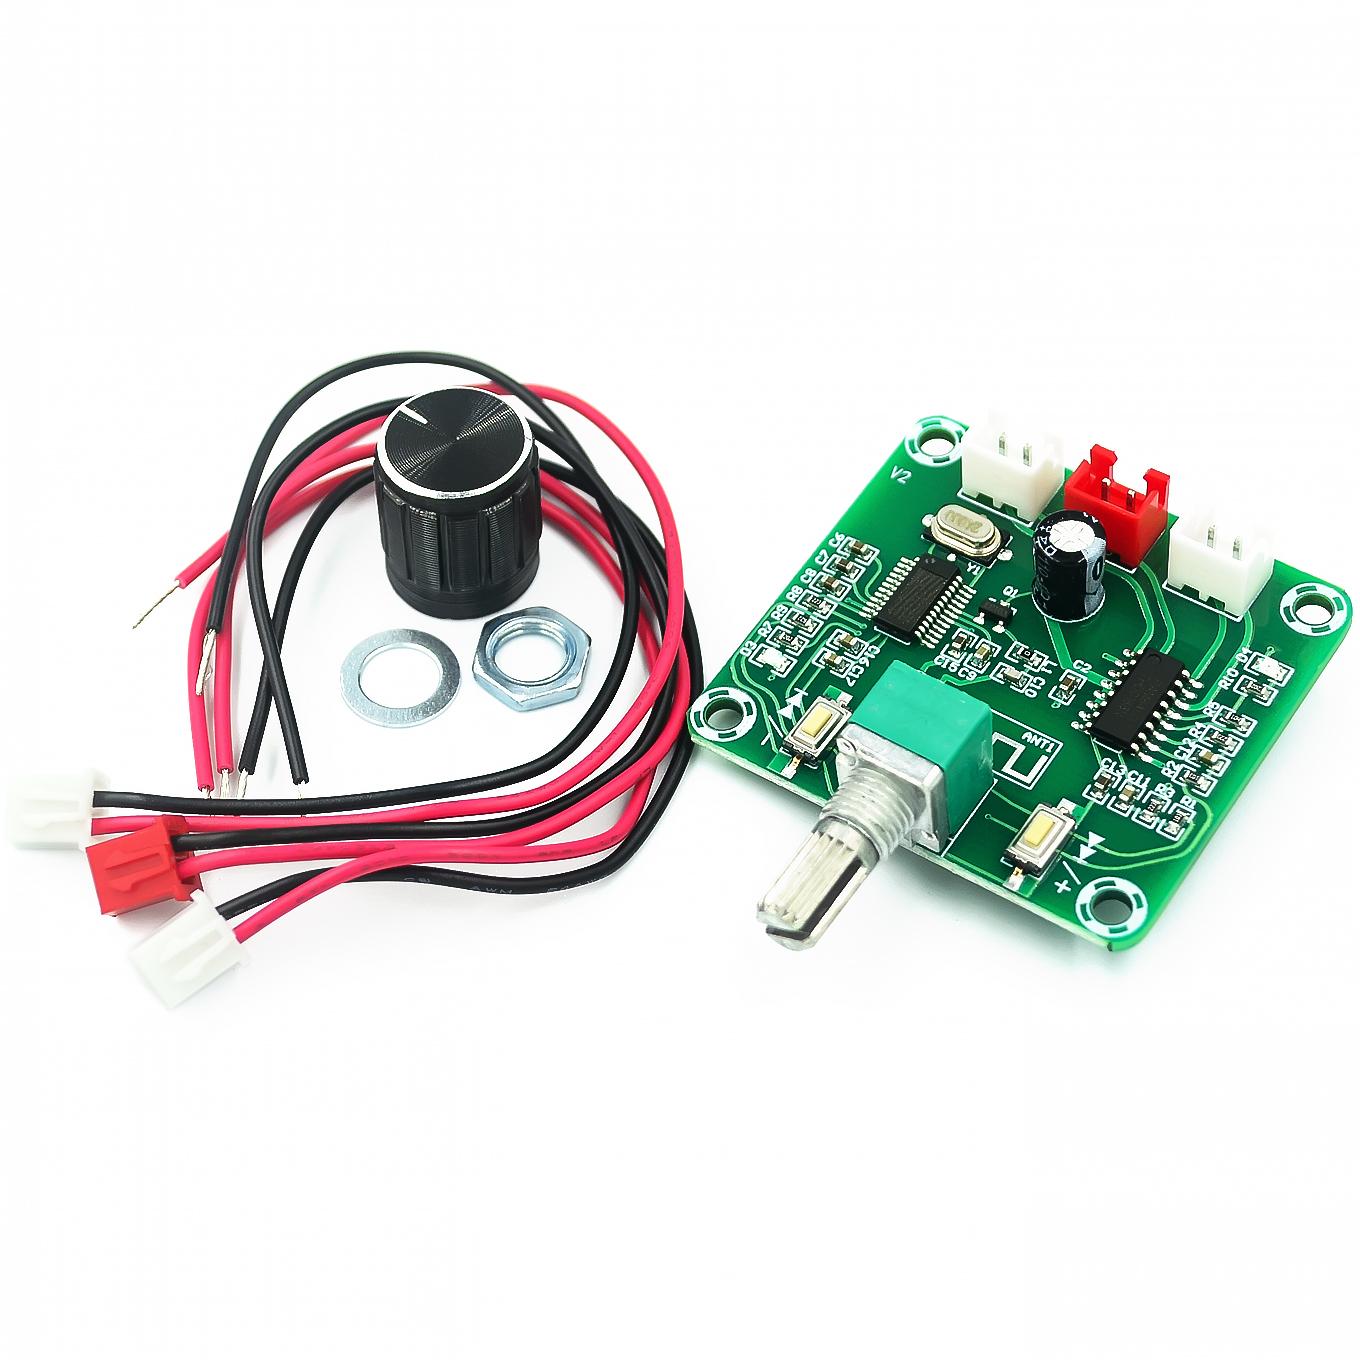 XH-A158 ultra clear Bluetooth 5.0 power amplifier board pam8403 small power DIY wireless speaker amplifier board 5W*2